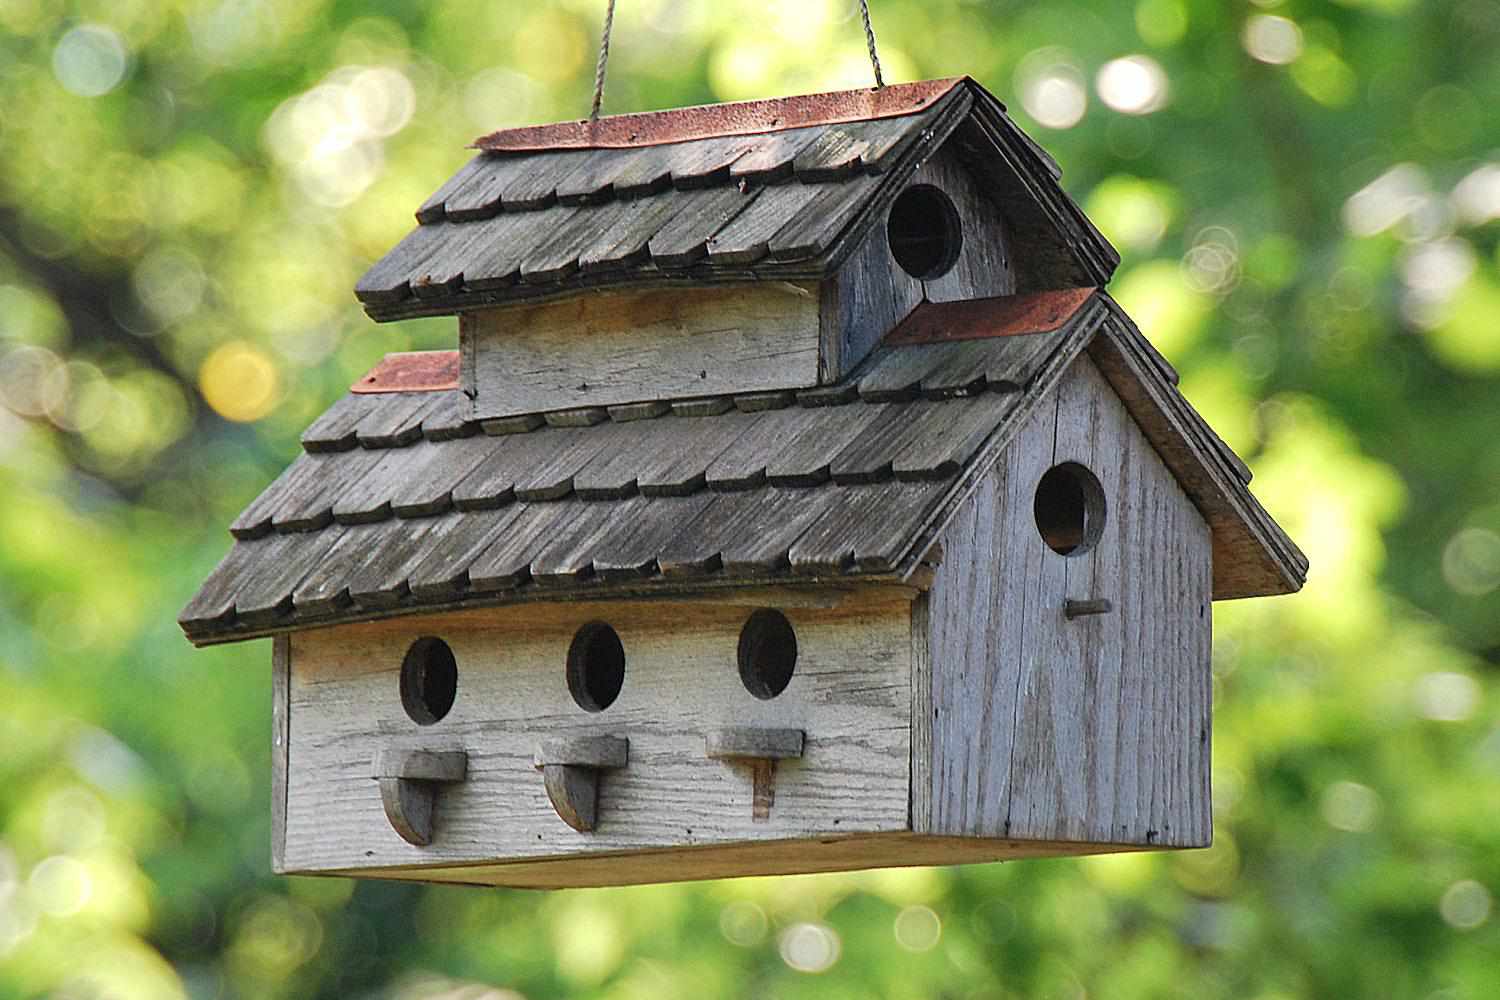 Make a Roomy Wooden Birdhouse